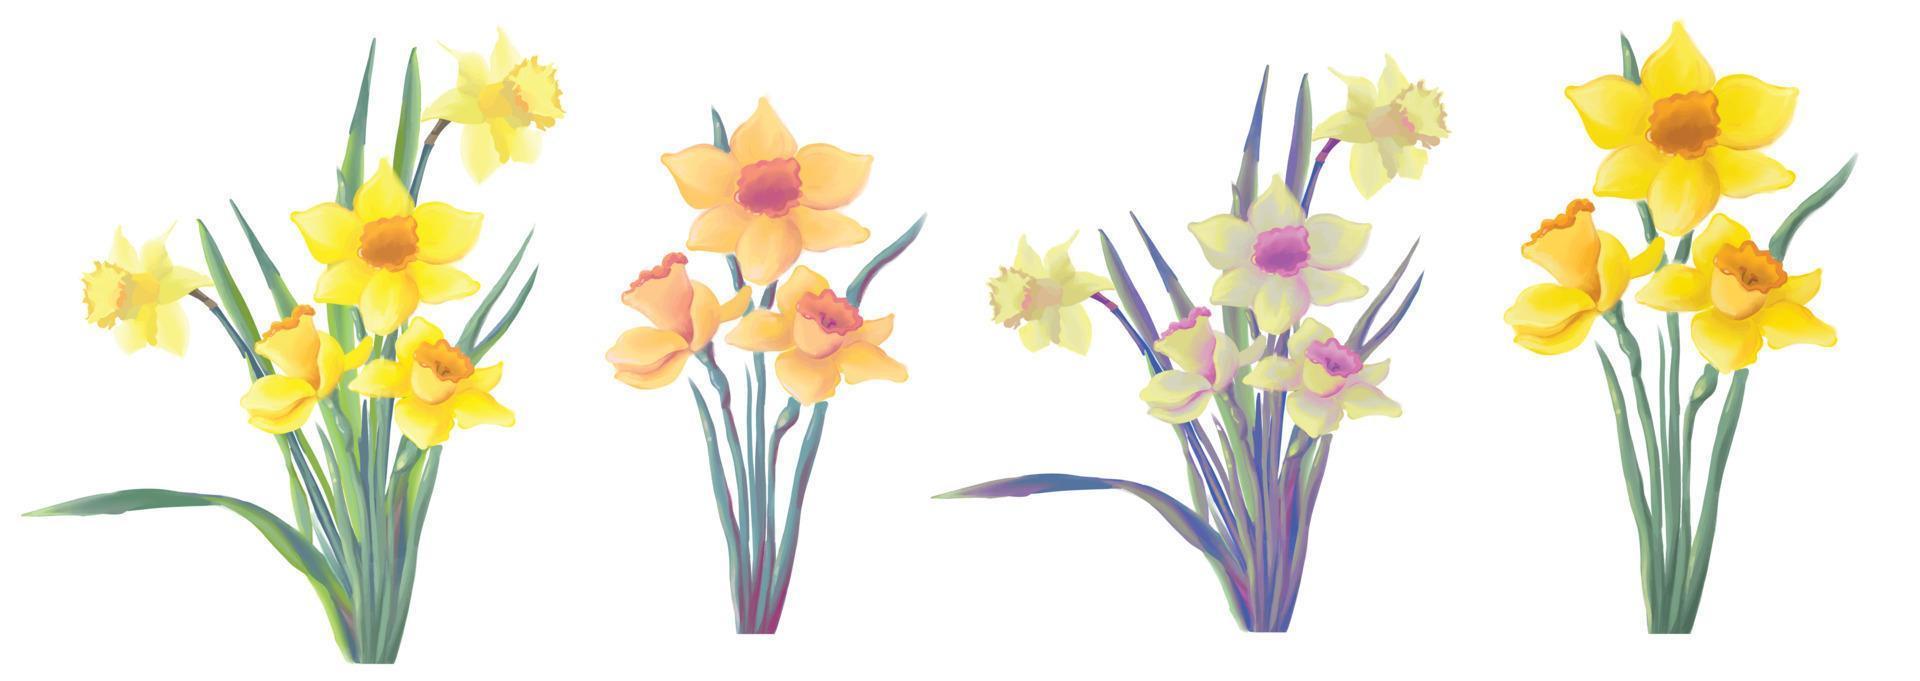 ensemble de jonquilles jaunes en fleurs, fleurs de printemps de narcisse, vecteur isolé